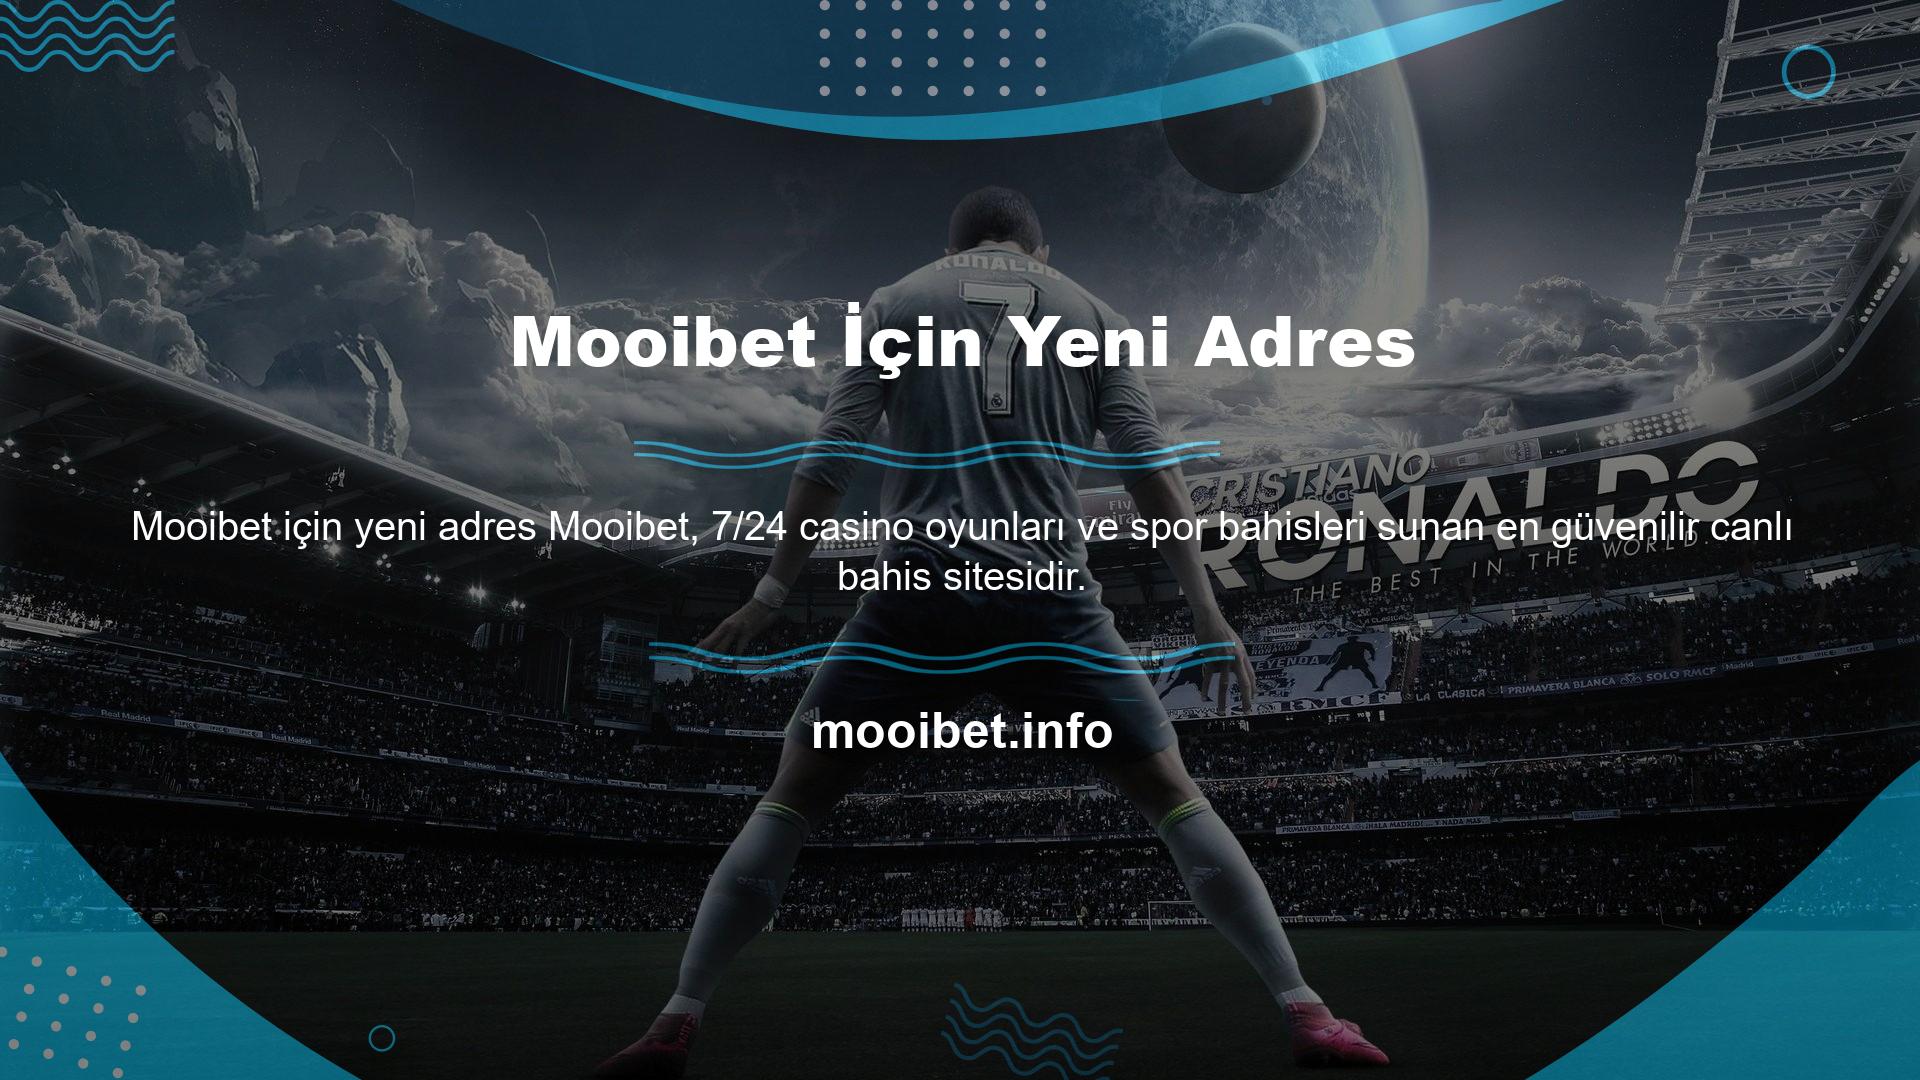 Mooibet girişi kazanıyor!

İspanyol devi Mooibet, canlı spor bahisleri ve casino oyunları sunuyor